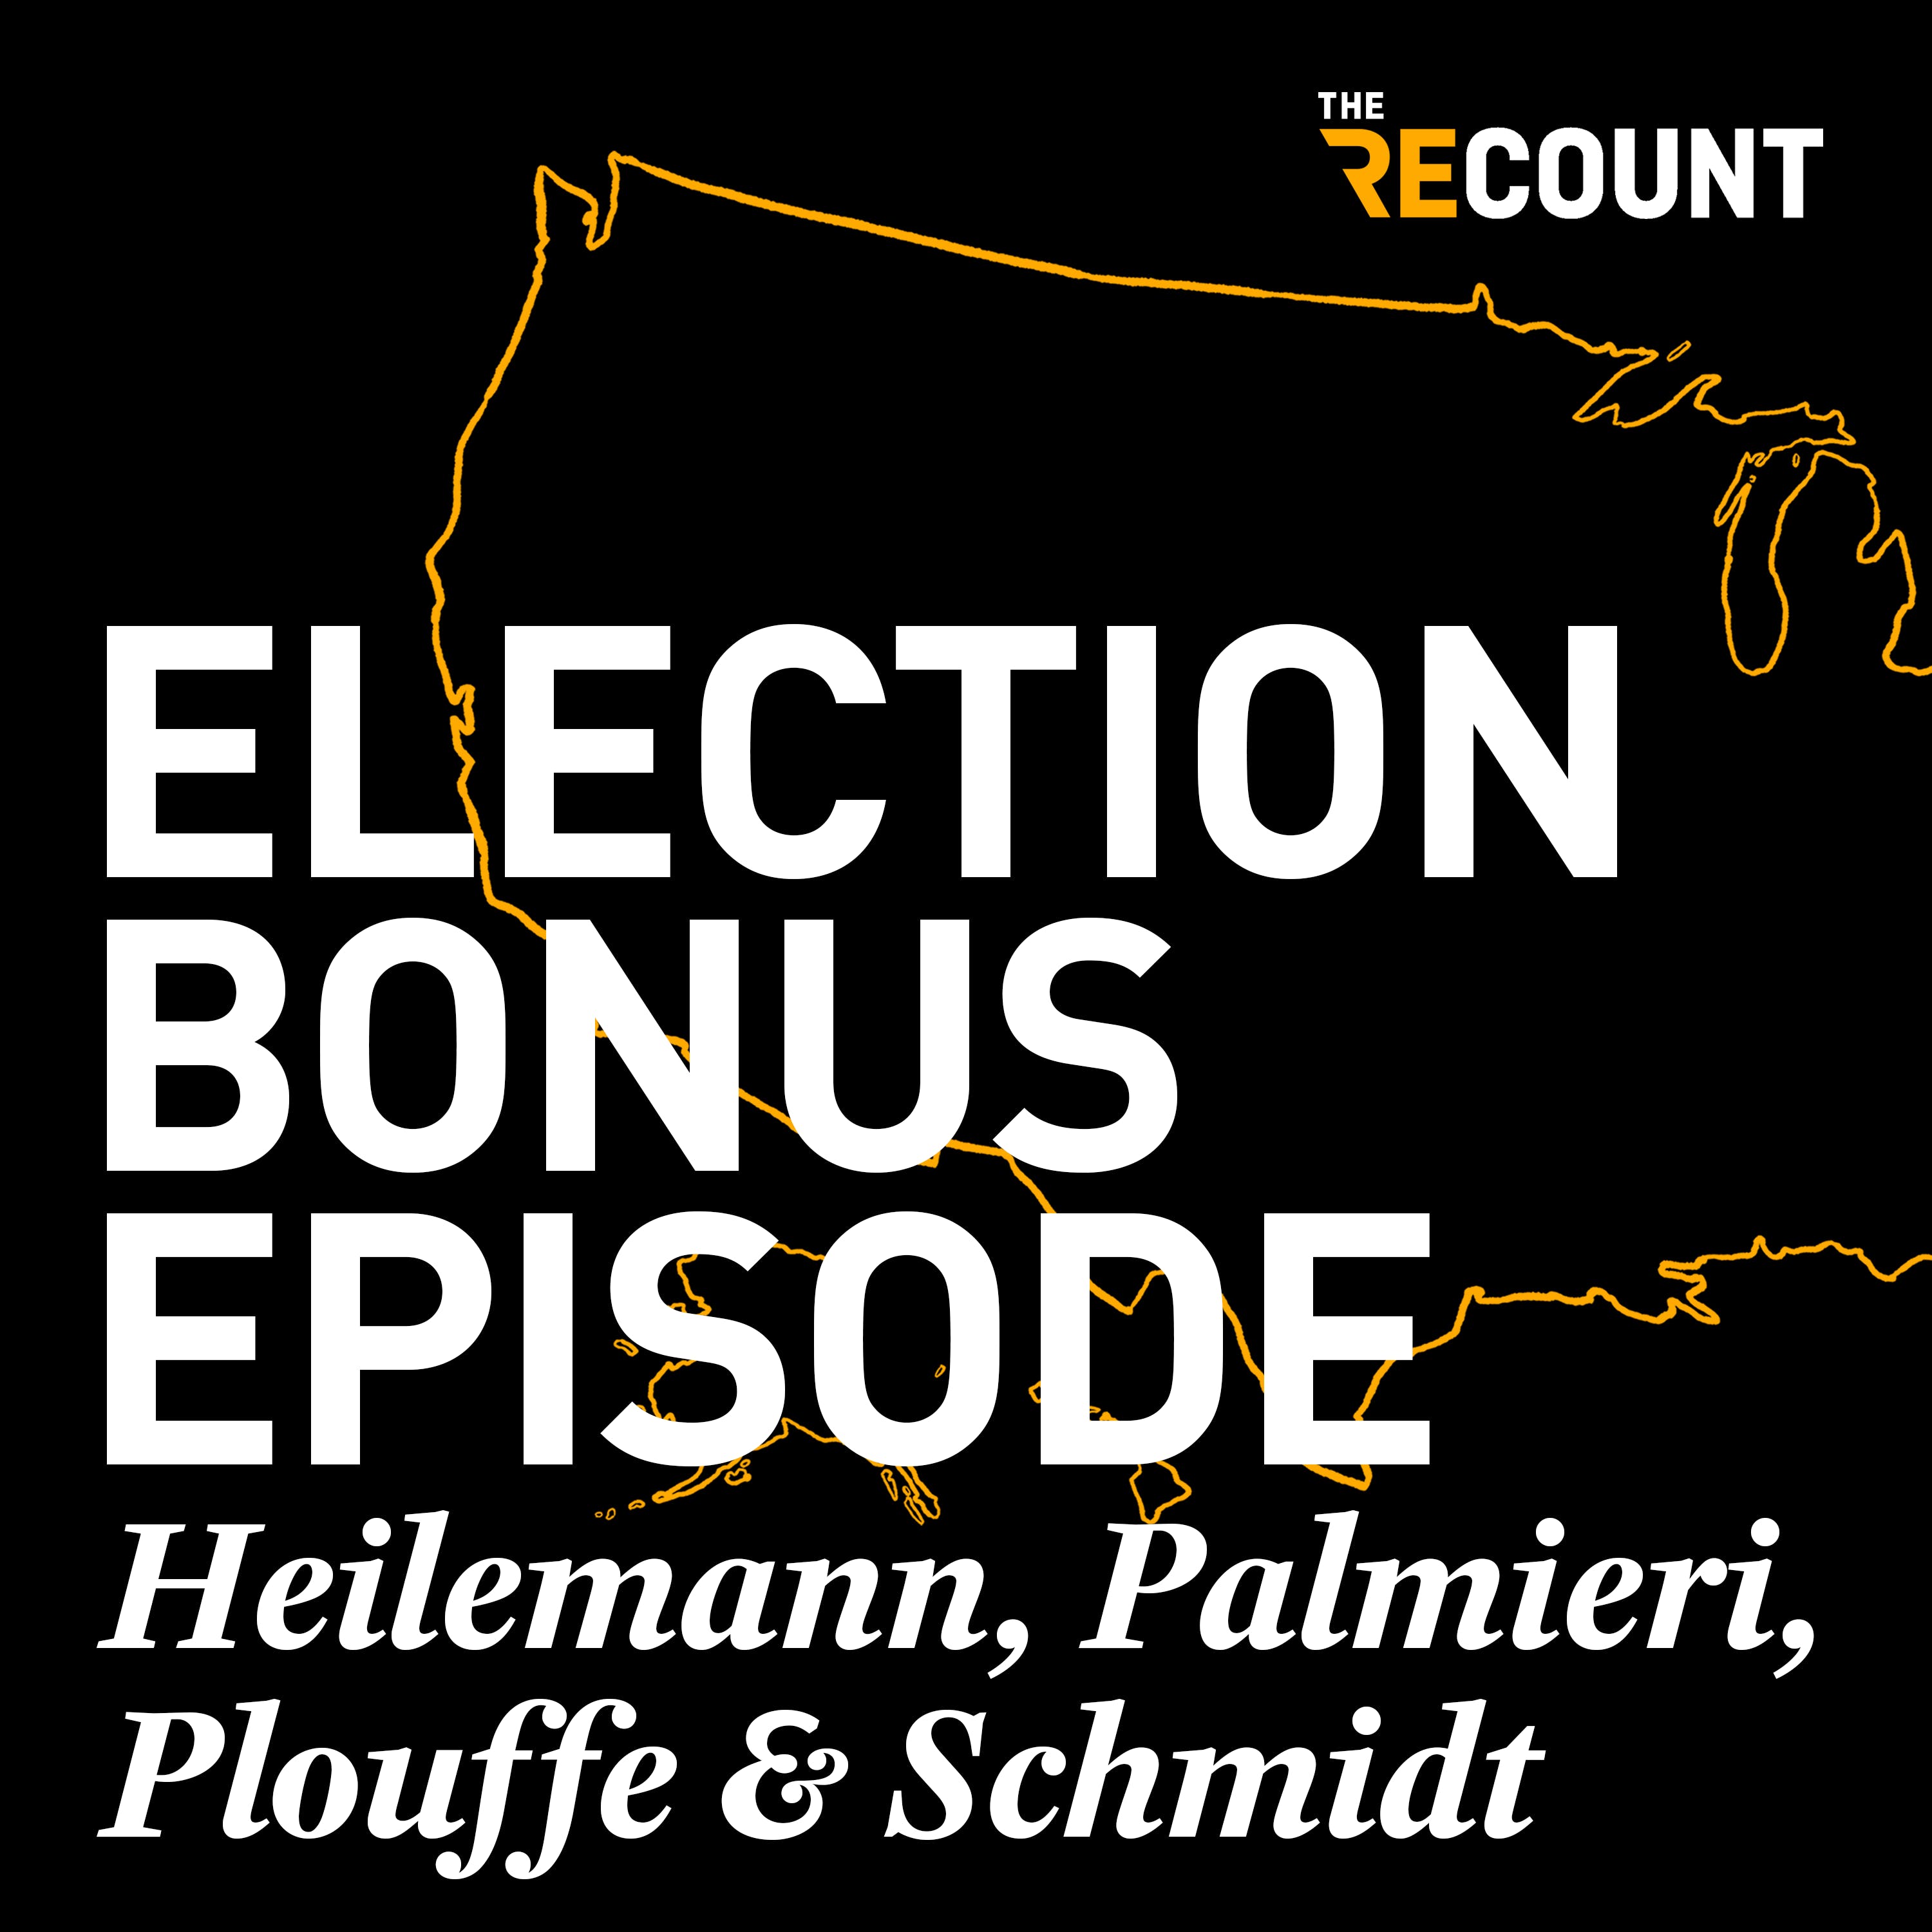 The Recount’s Election Bonus Episode